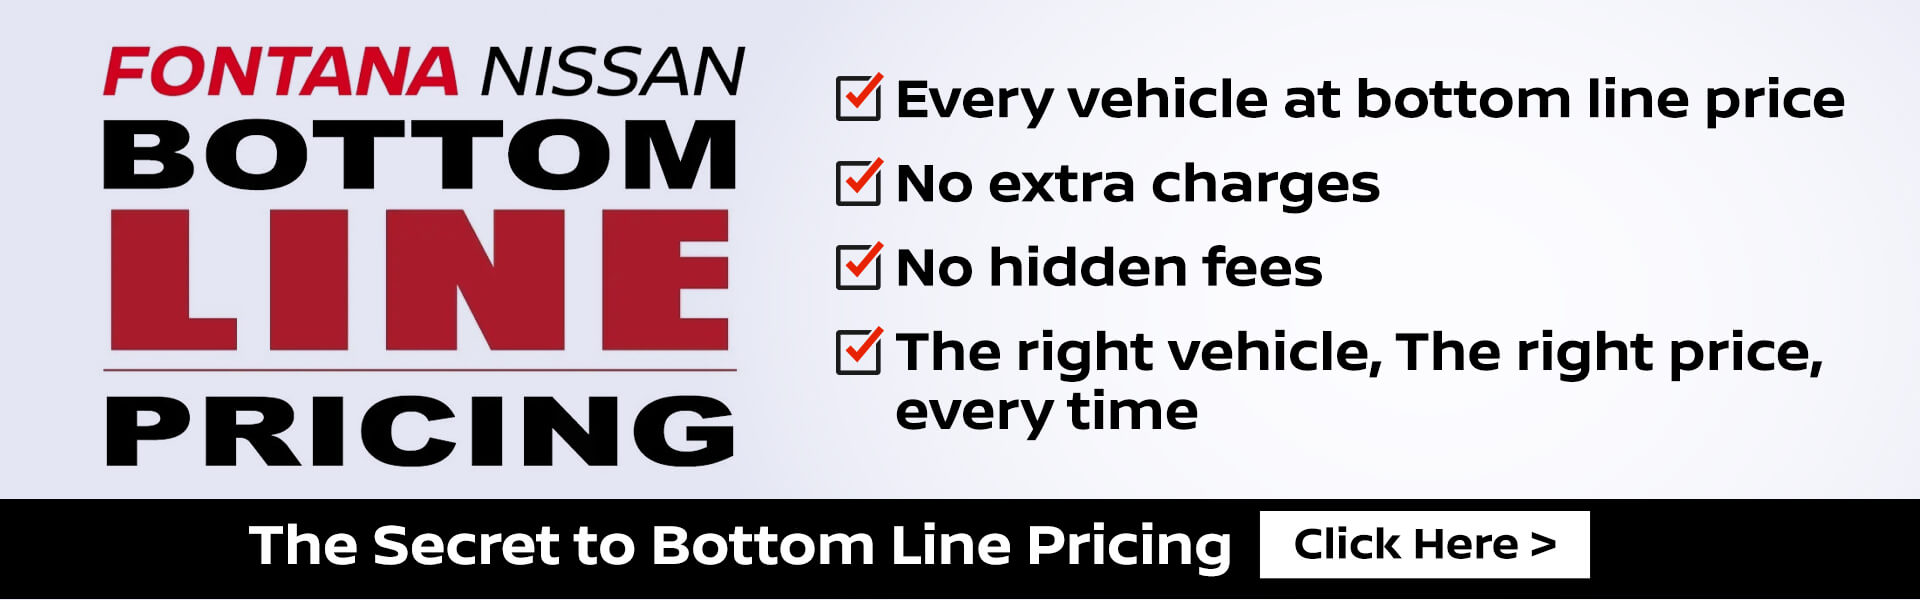 Fontana Nissan Bottom Line Pricing